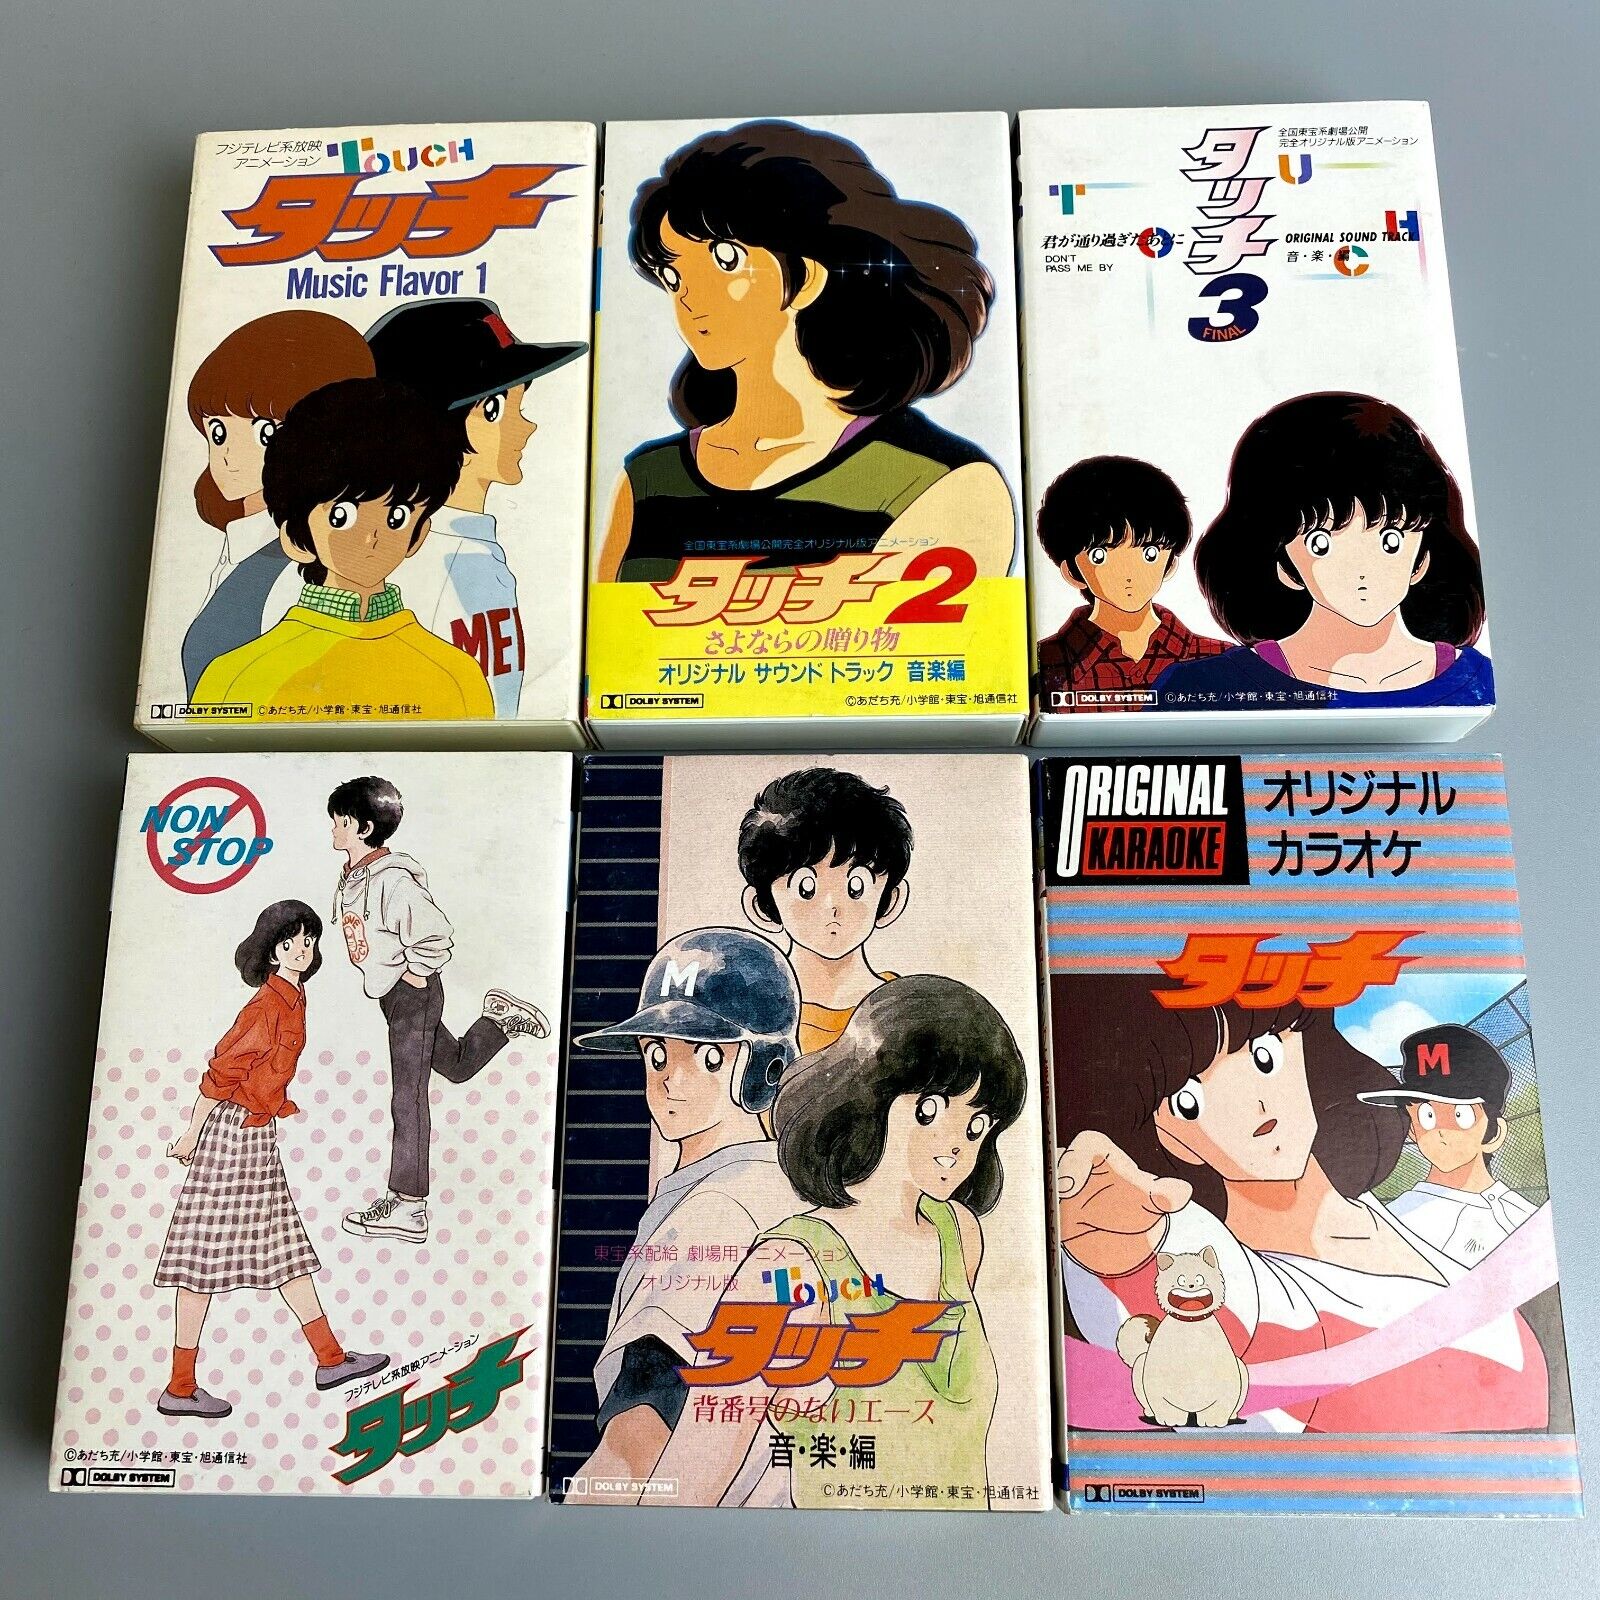 RARE 1980s Touch soundtrack 6-piece set cassette tape album vintage anime japan